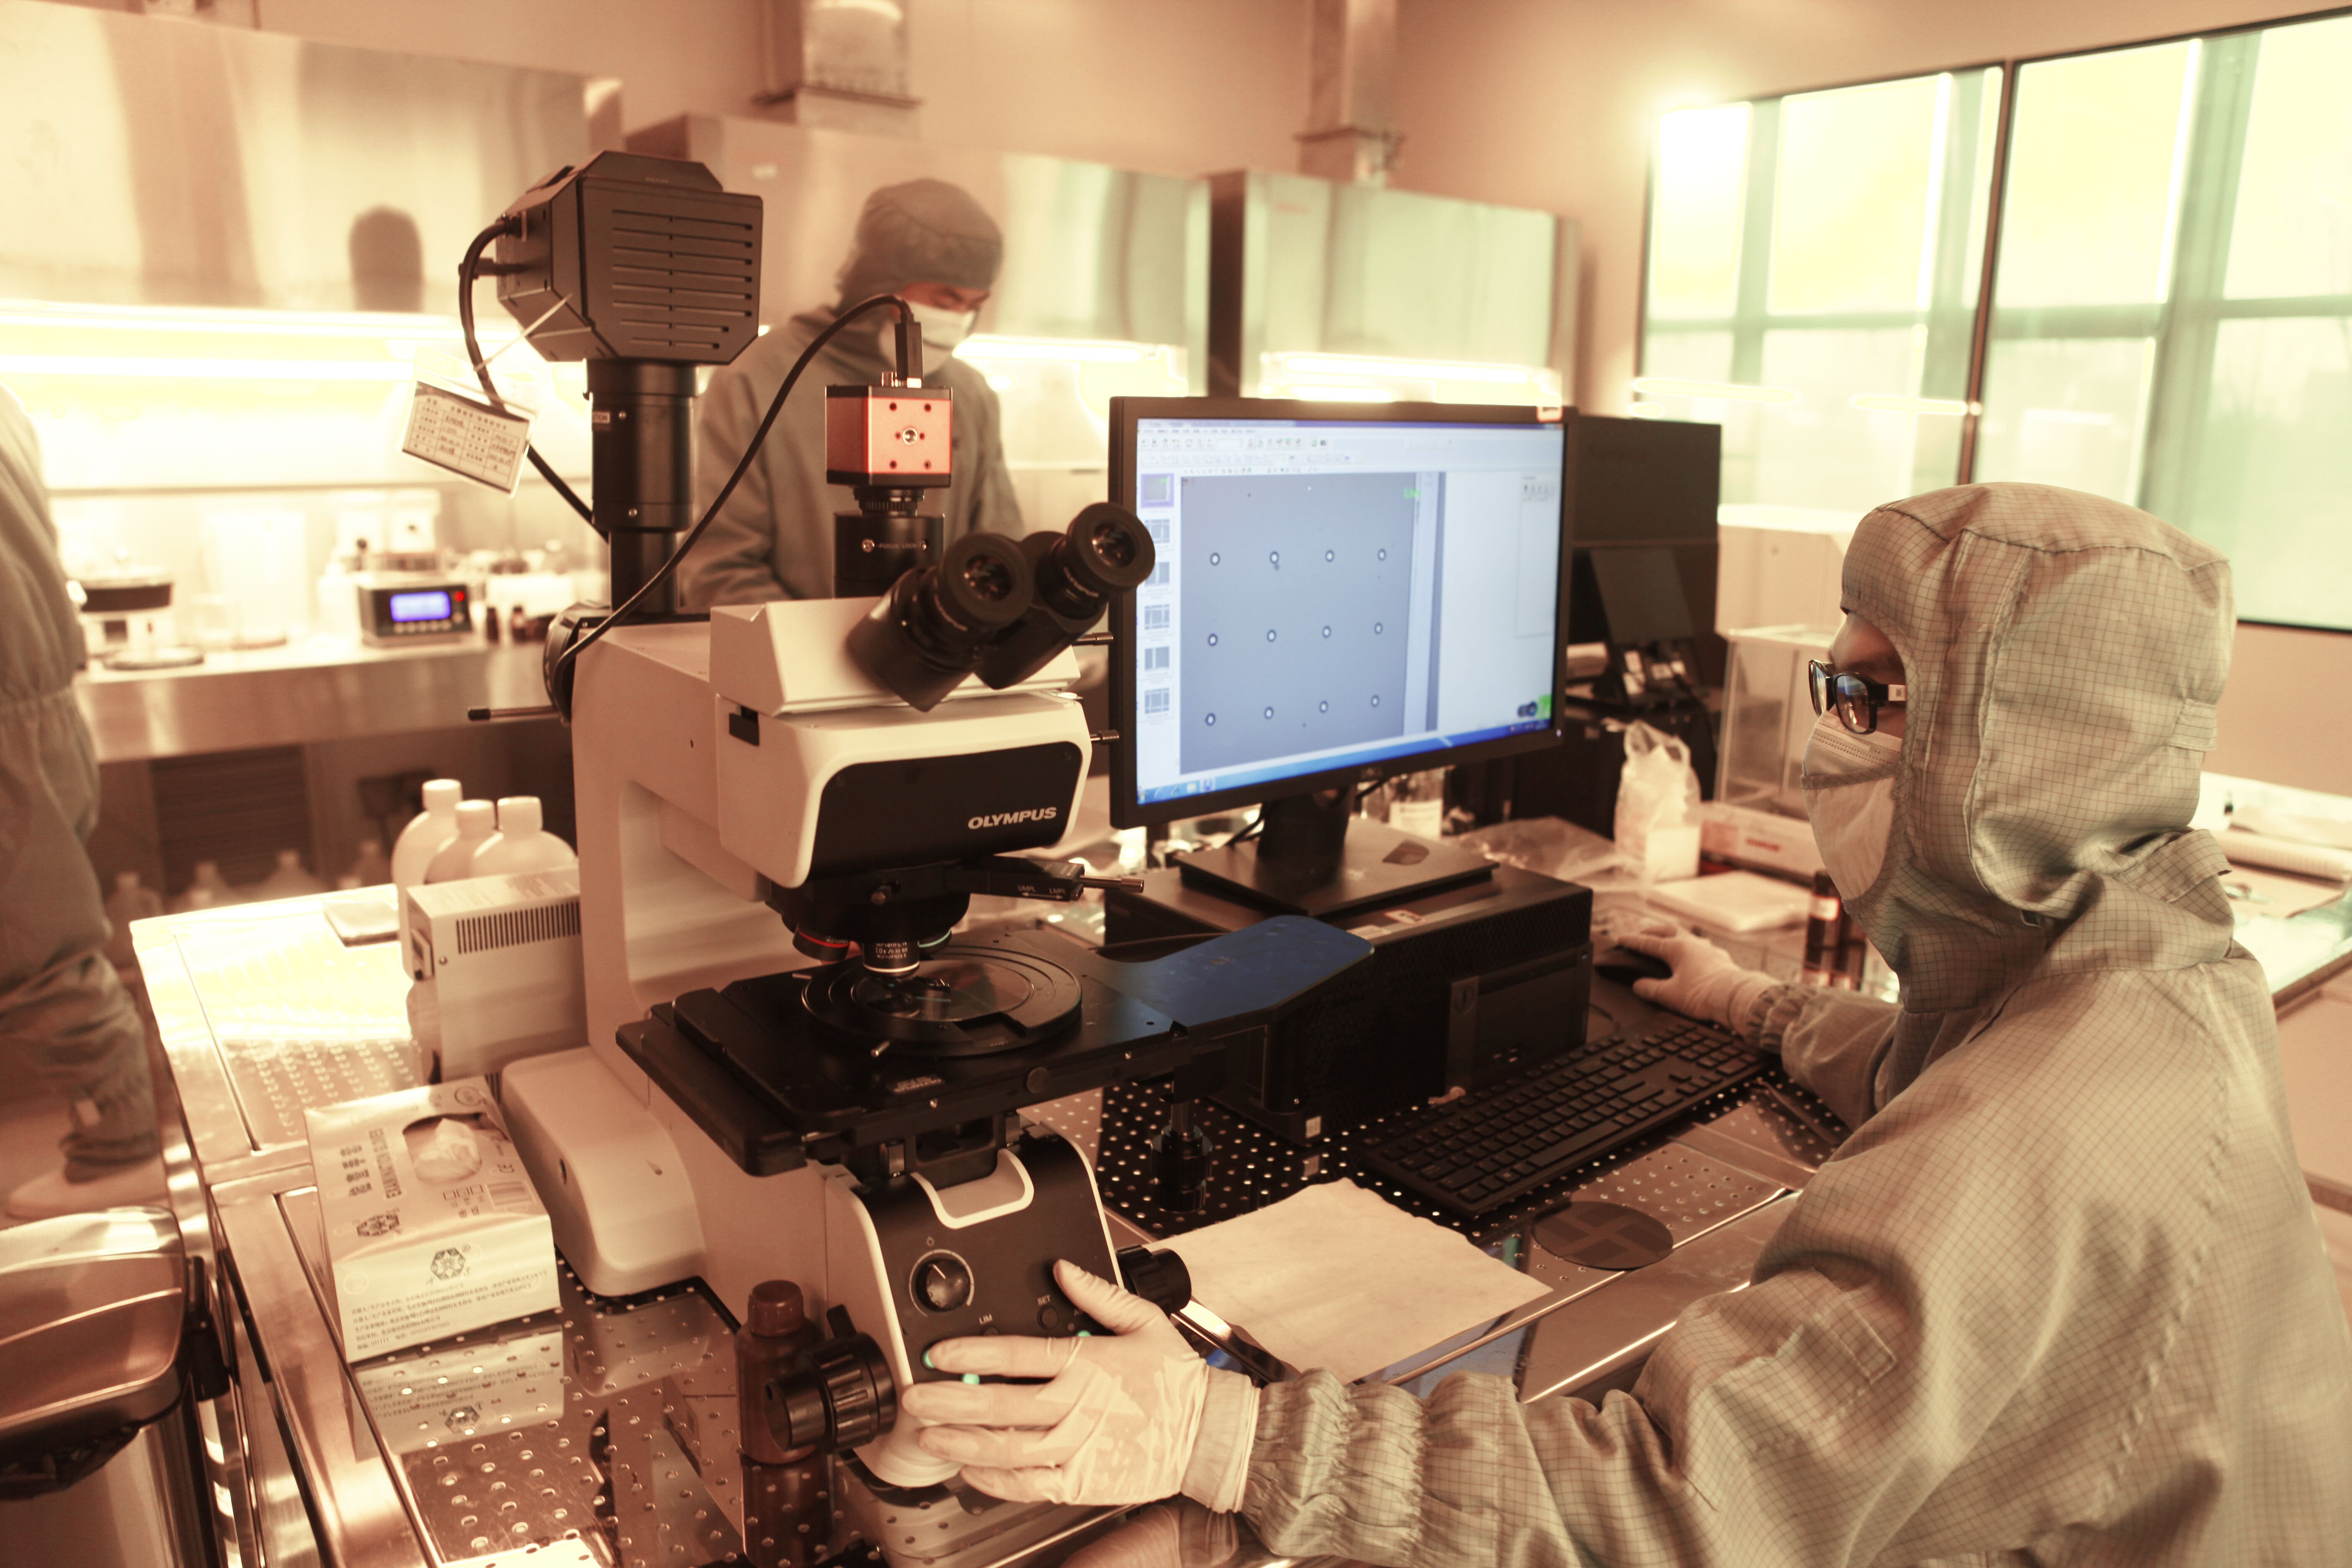 波米科技有限公司技术人员进行半导体材料生产试验。 